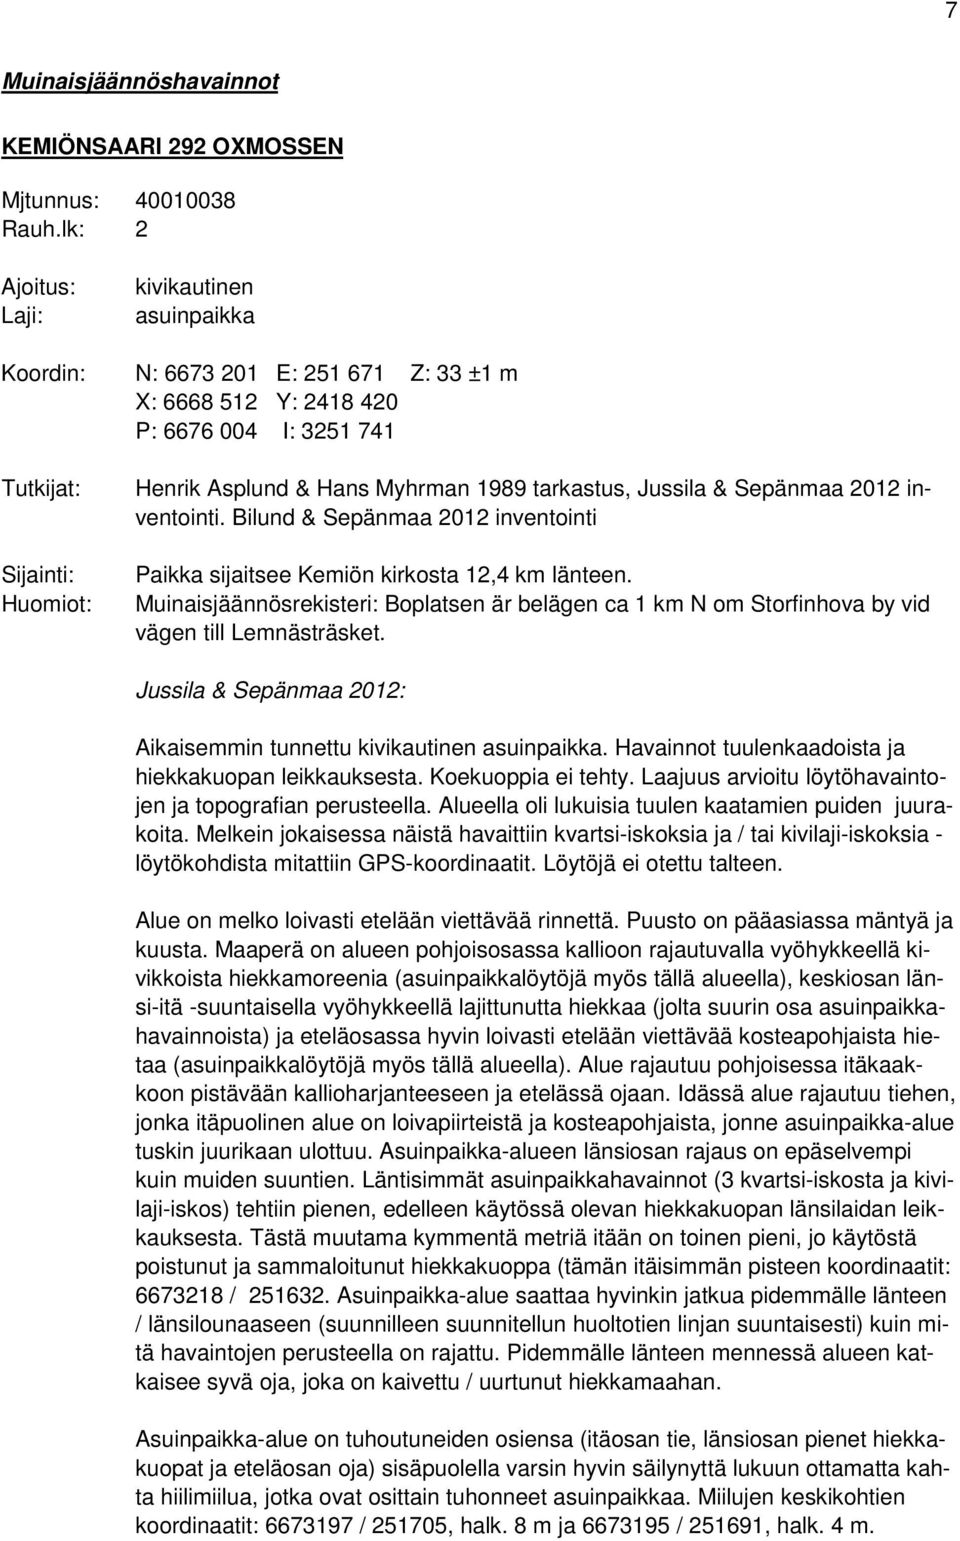 1989 tarkastus, Jussila & Sepänmaa 2012 inventointi. Bilund & Sepänmaa 2012 inventointi Paikka sijaitsee Kemiön kirkosta 12,4 km länteen.